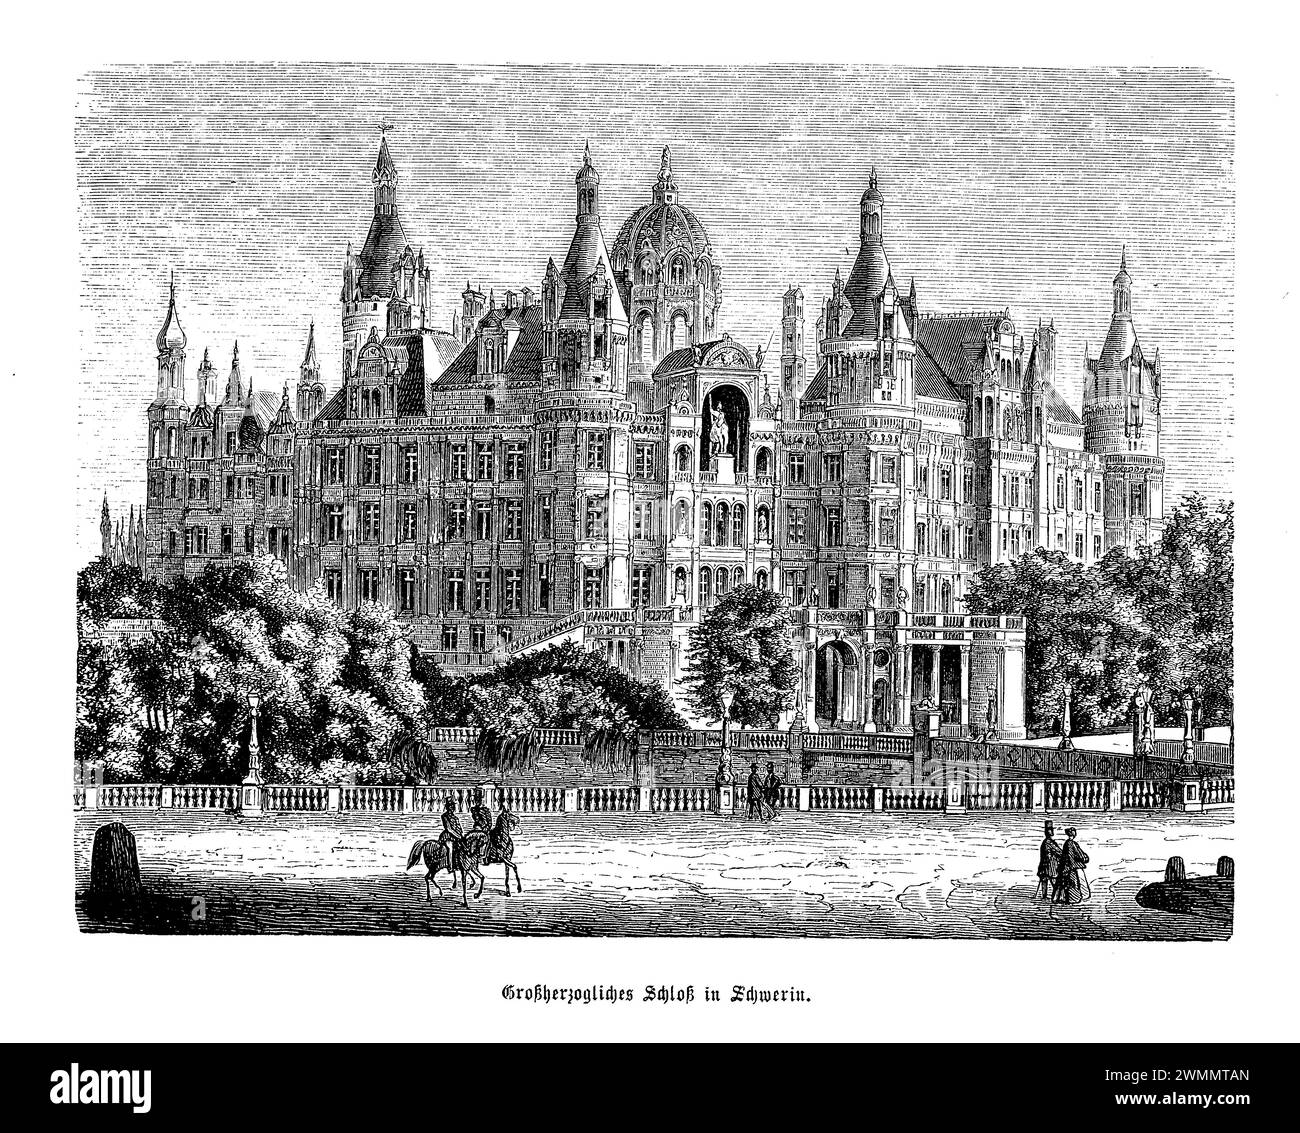 Le château de Schwerin, situé dans la ville pittoresque de Schwerin dans le nord de l'Allemagne, est un palais historique qui semble avoir été soulevé tout droit des pages d'un conte de fées. Avec ses fondations datant du 10ème siècle, le château a subi diverses transformations, culminant dans son état actuel comme un exemple étonnant de l'histoire romantique. Niché sur une île du lac Schwerin et entouré de jardins luxuriants et de sculptures complexes, le château est un symbole de la grandeur et de l'histoire du Mecklembourg-Poméranie occidentale. Autrefois la maison des ducs et des grands-ducs. Banque D'Images